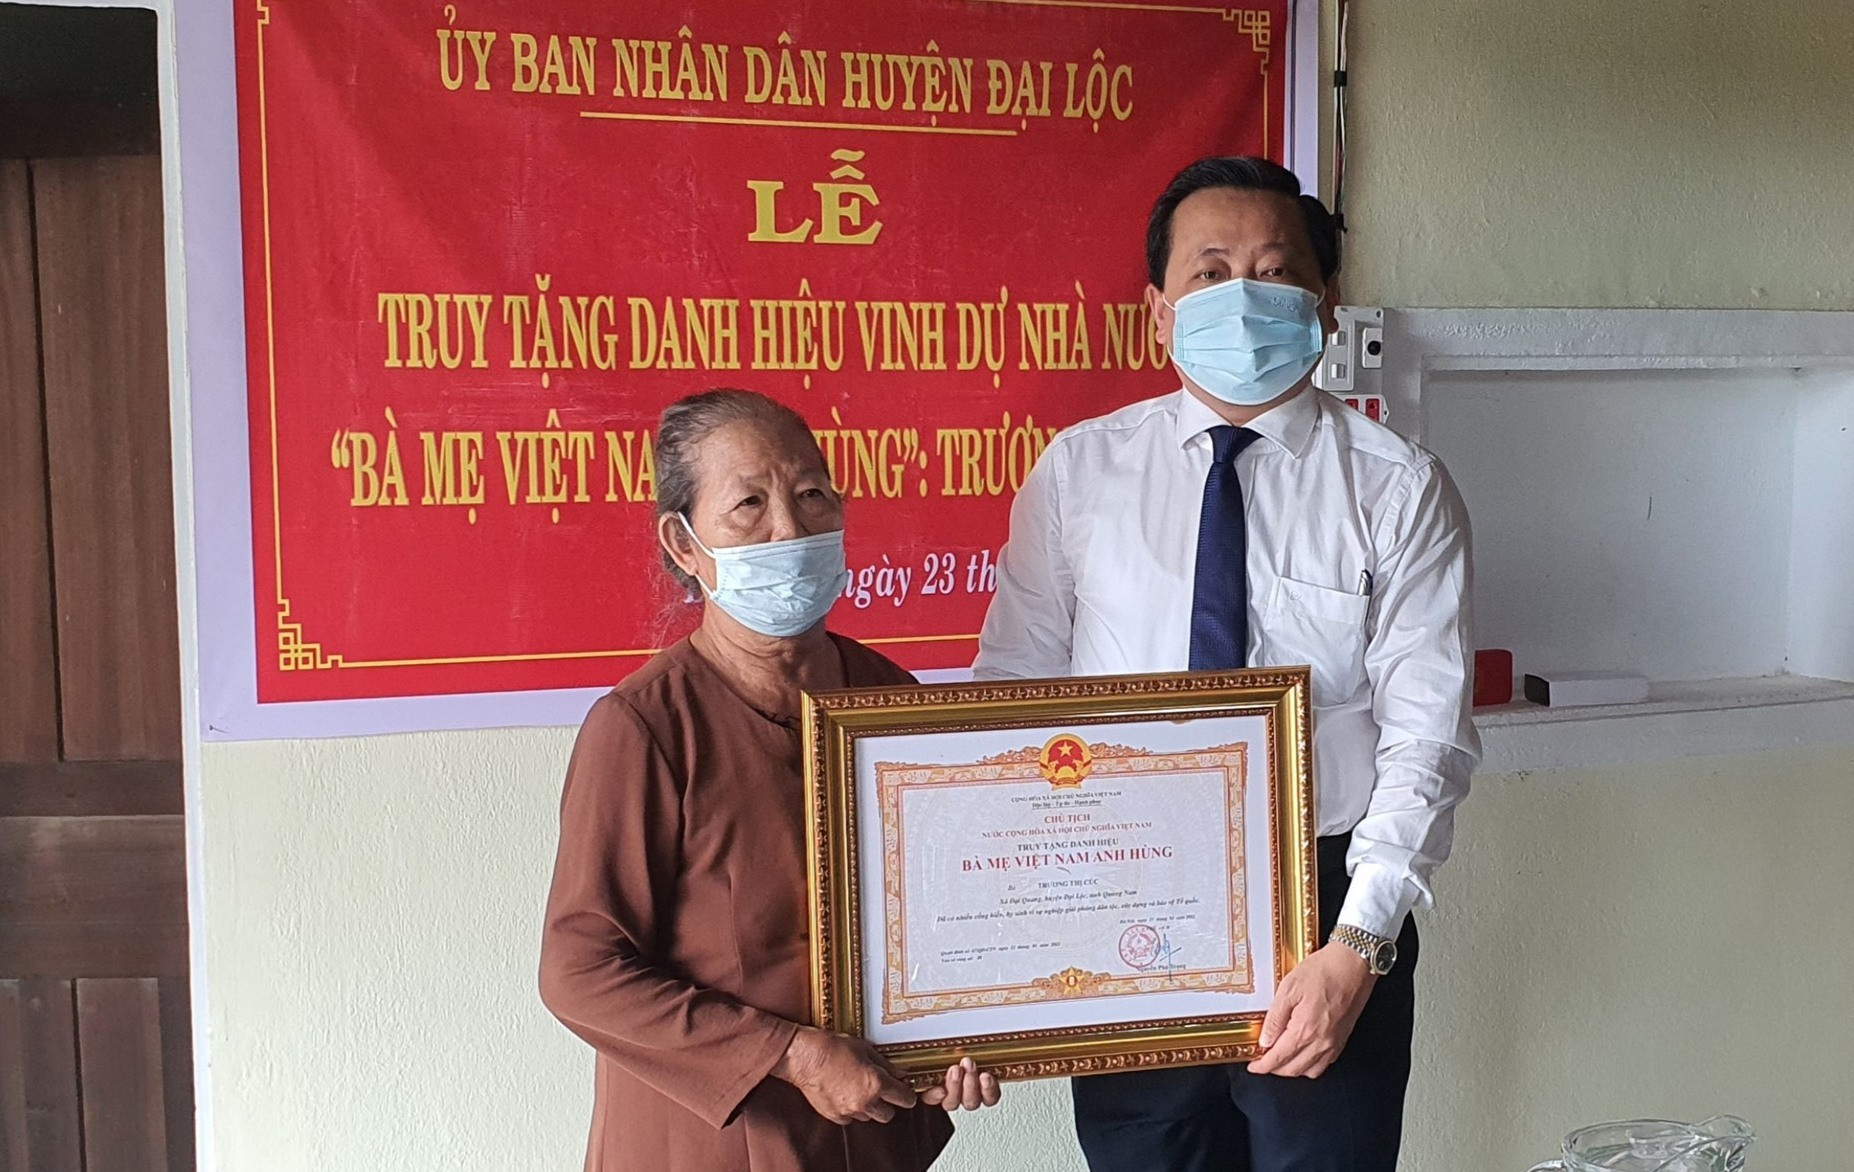 Lãnh đạo huyện tổ chức lễ truy tặng danh hiệu “Bà mẹ VNAH” cho Mẹ VNAH Trương Thị Cúc. Ảnh: TR.NHAN